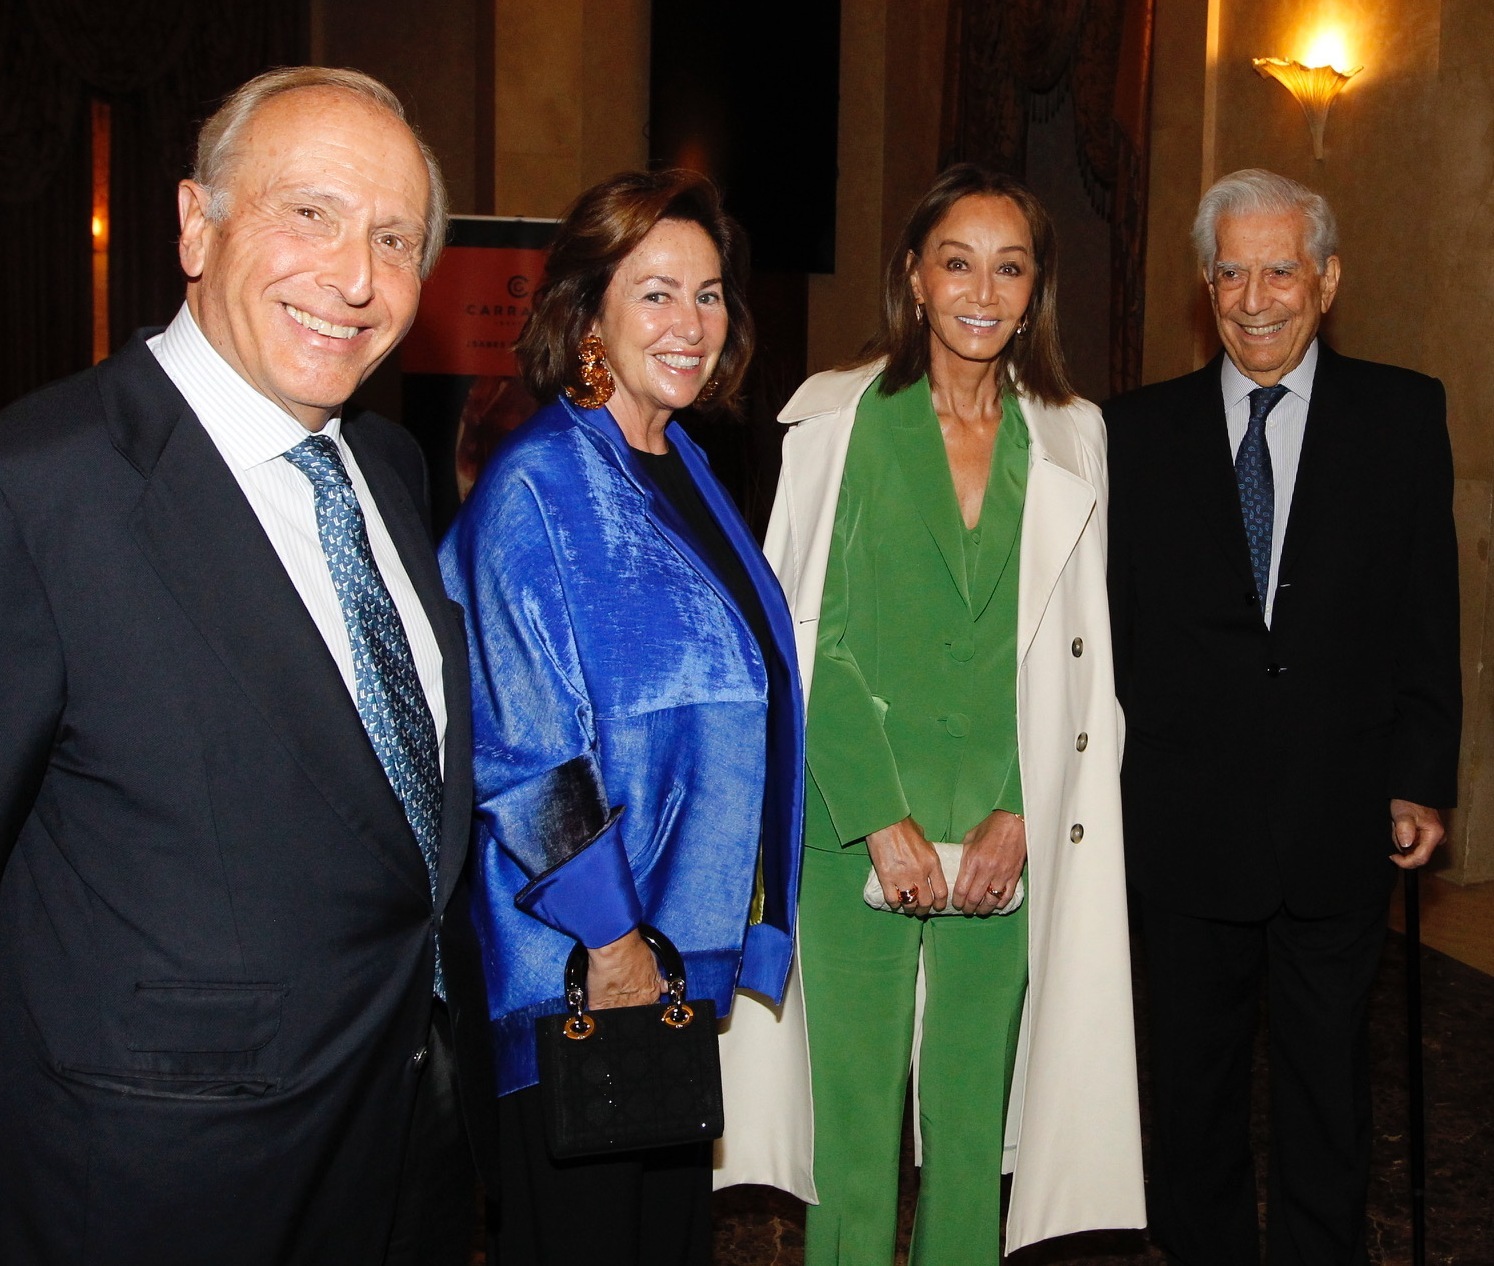 Luis Fernndez-Vega, Victoria Cueto-Felgueroso, Isabel Preysler y Mario Vargas. Llosa.